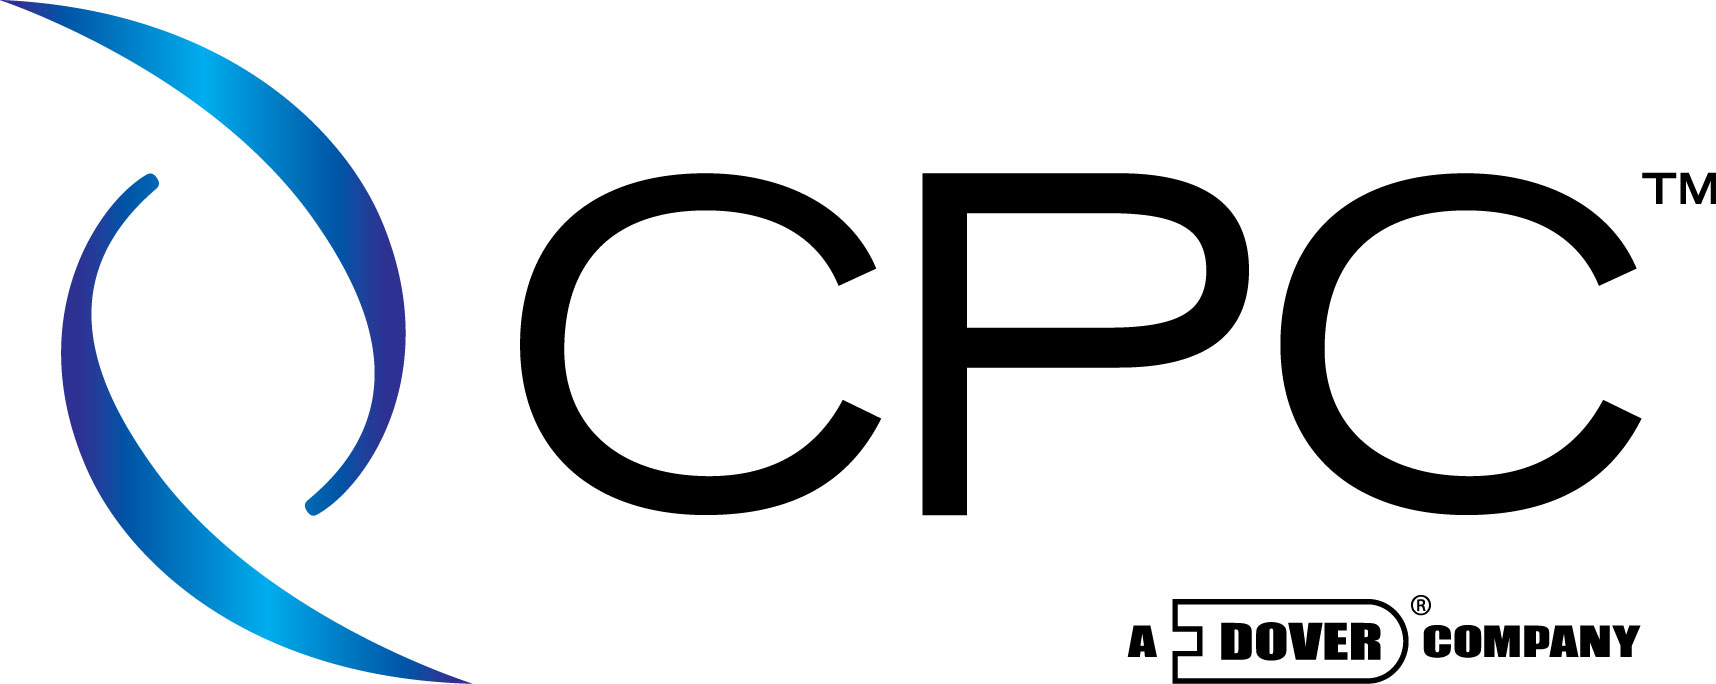 CPC-Colder